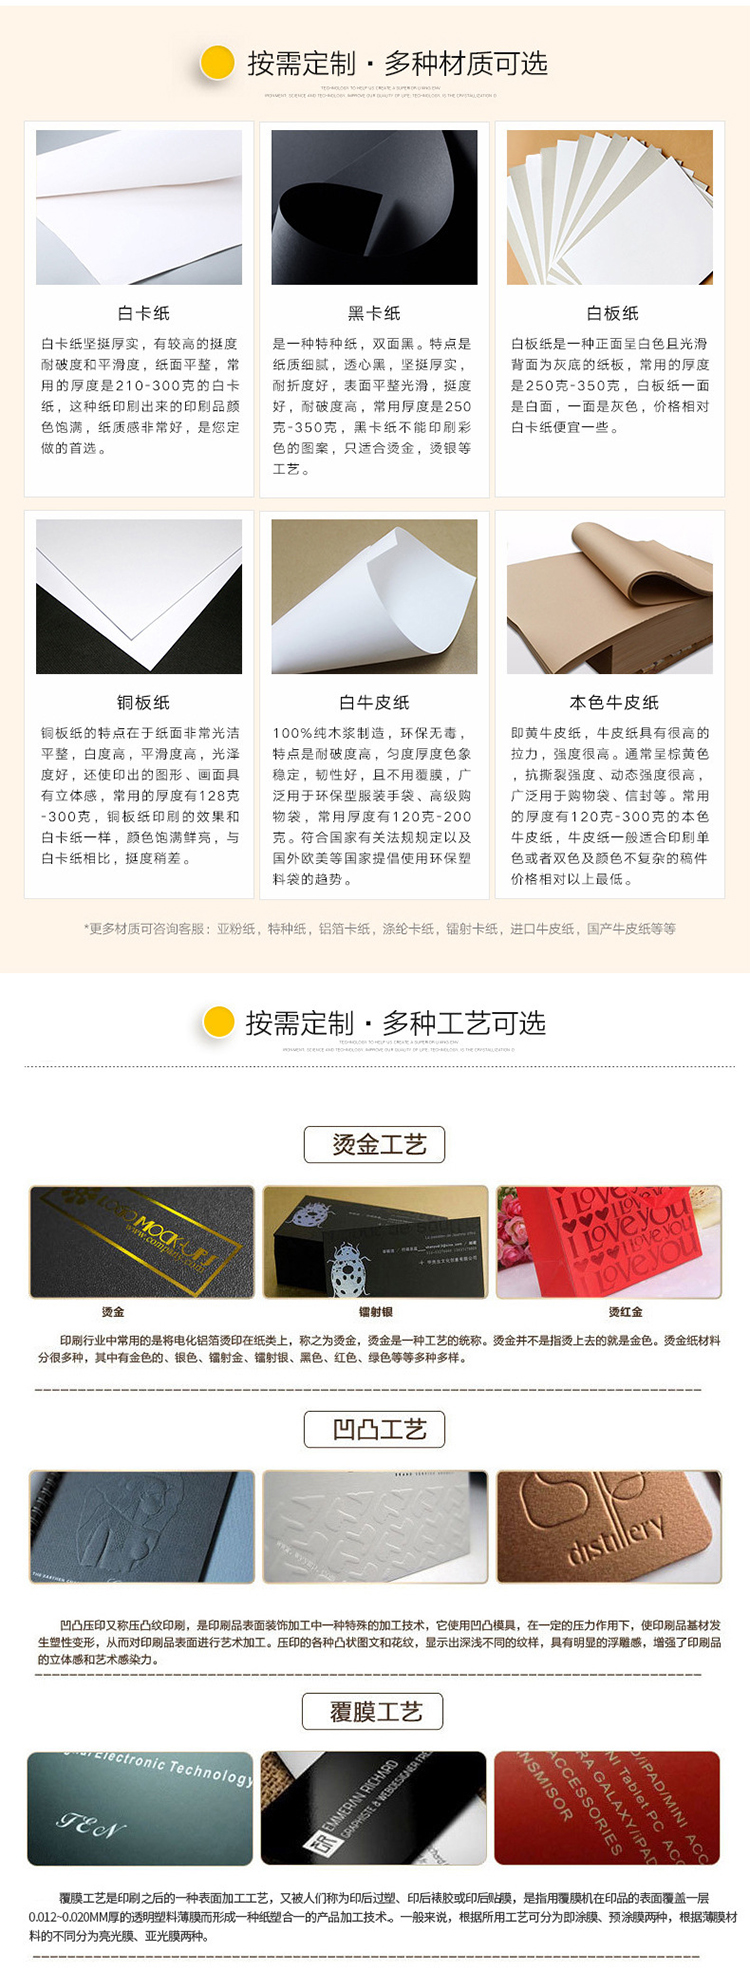 河北专业包装盒印刷厂(1月12日更新)